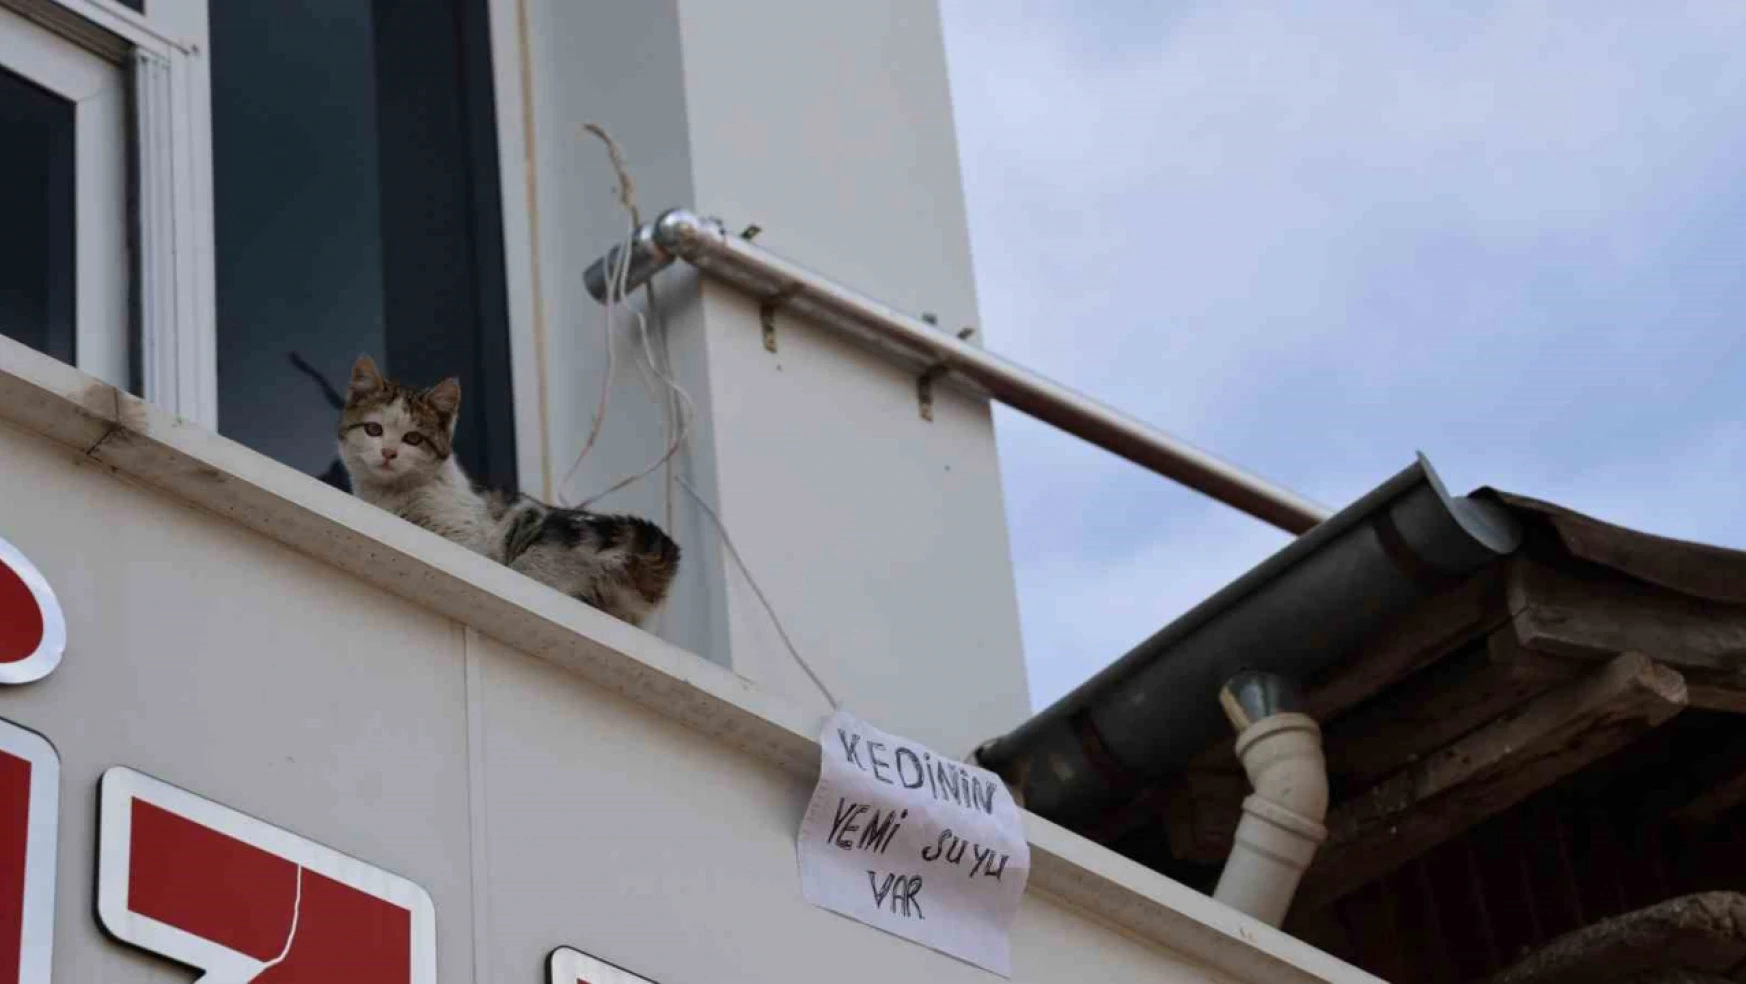 Kedi için balkonuna ekmek atanları şu yazıyla uyardı!